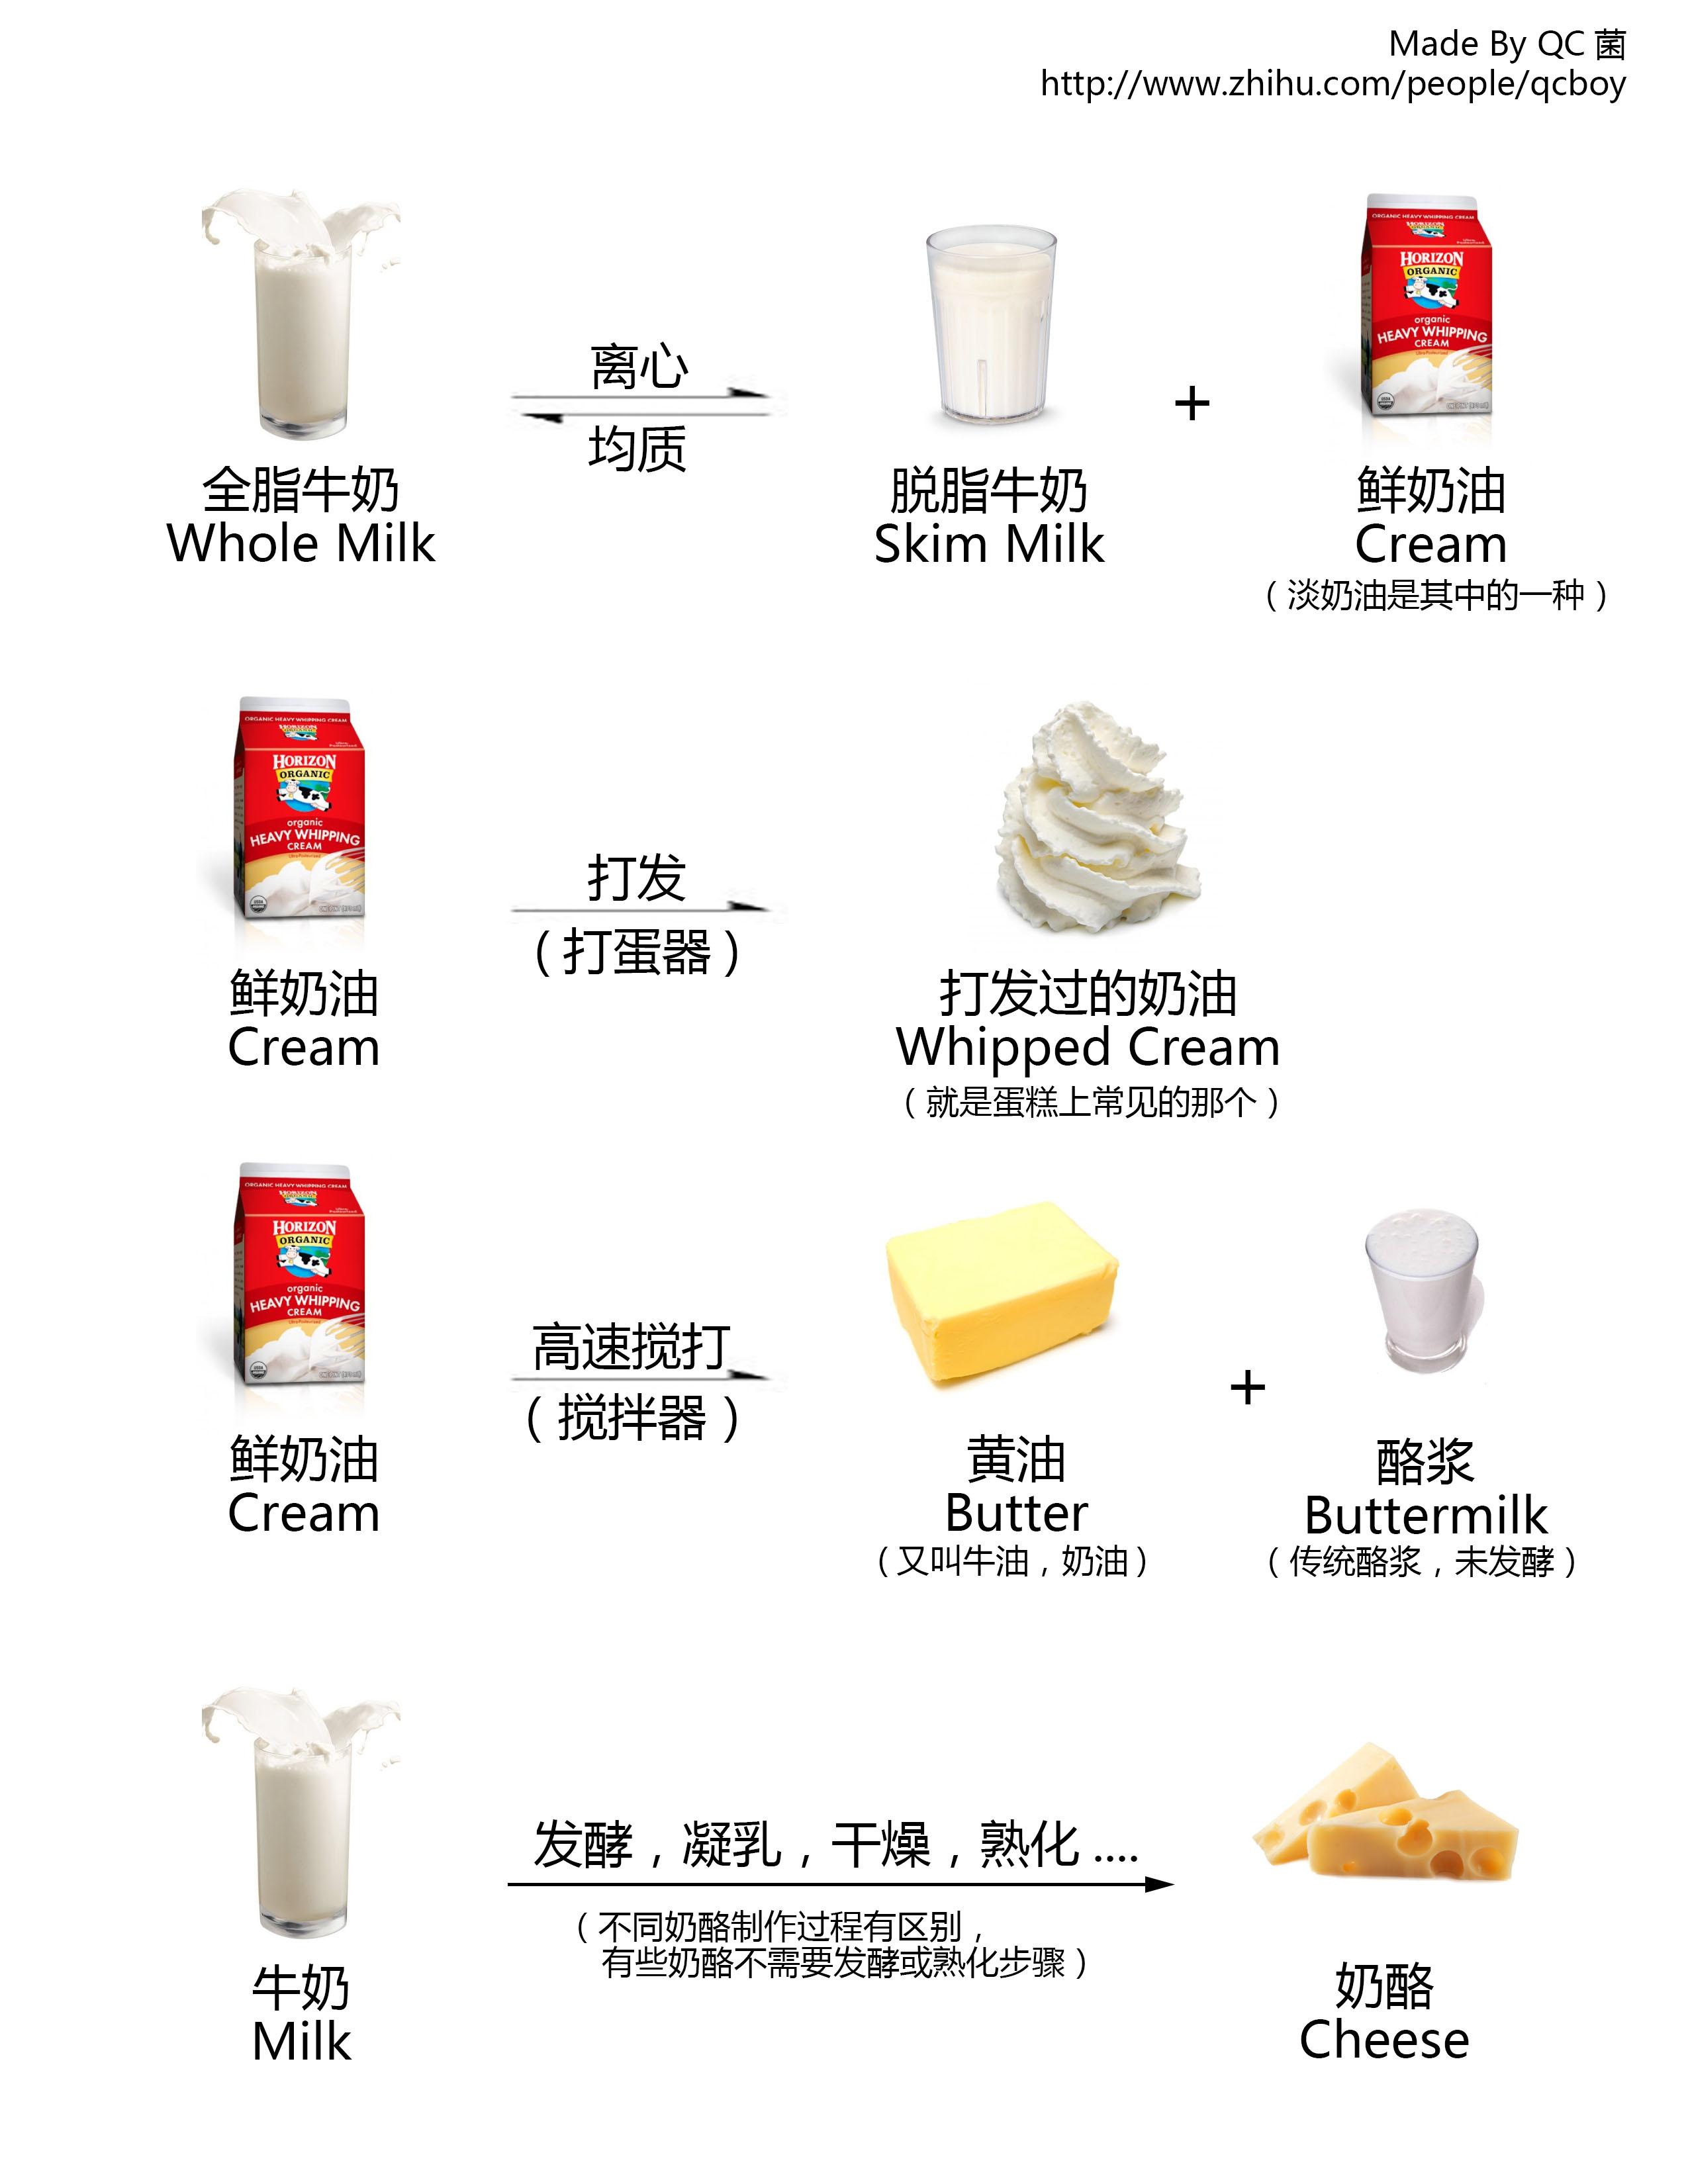 浓缩牛奶和普通牛奶的区别？ - 知乎